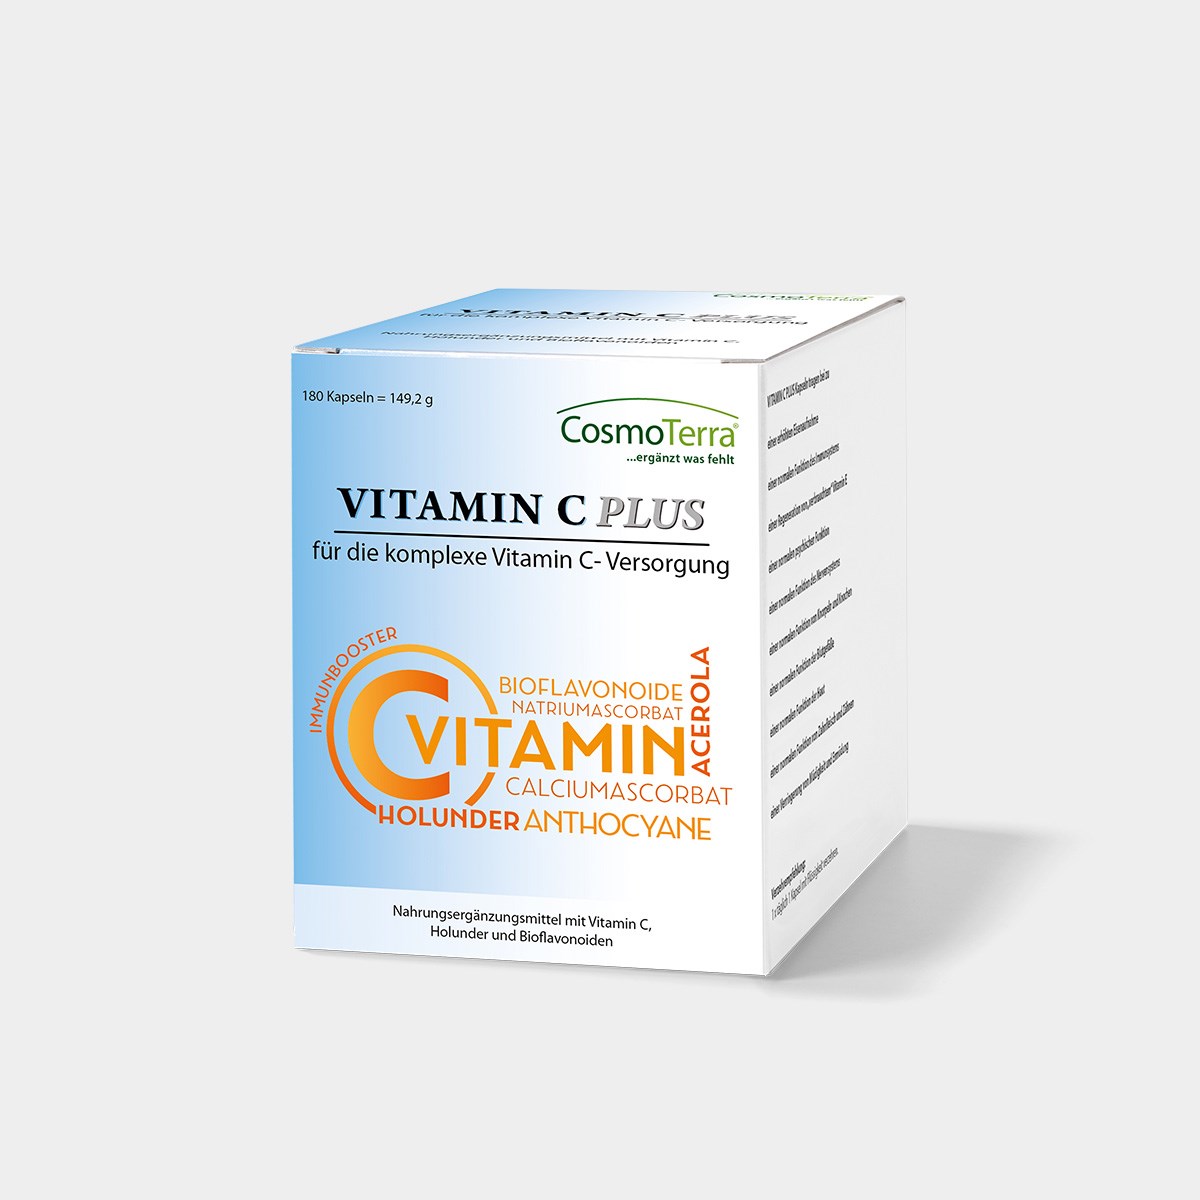 Cosmoterra Ernährungsberatung - Sabine Steinwender Produkt-Beispiele Vitamin C Plus